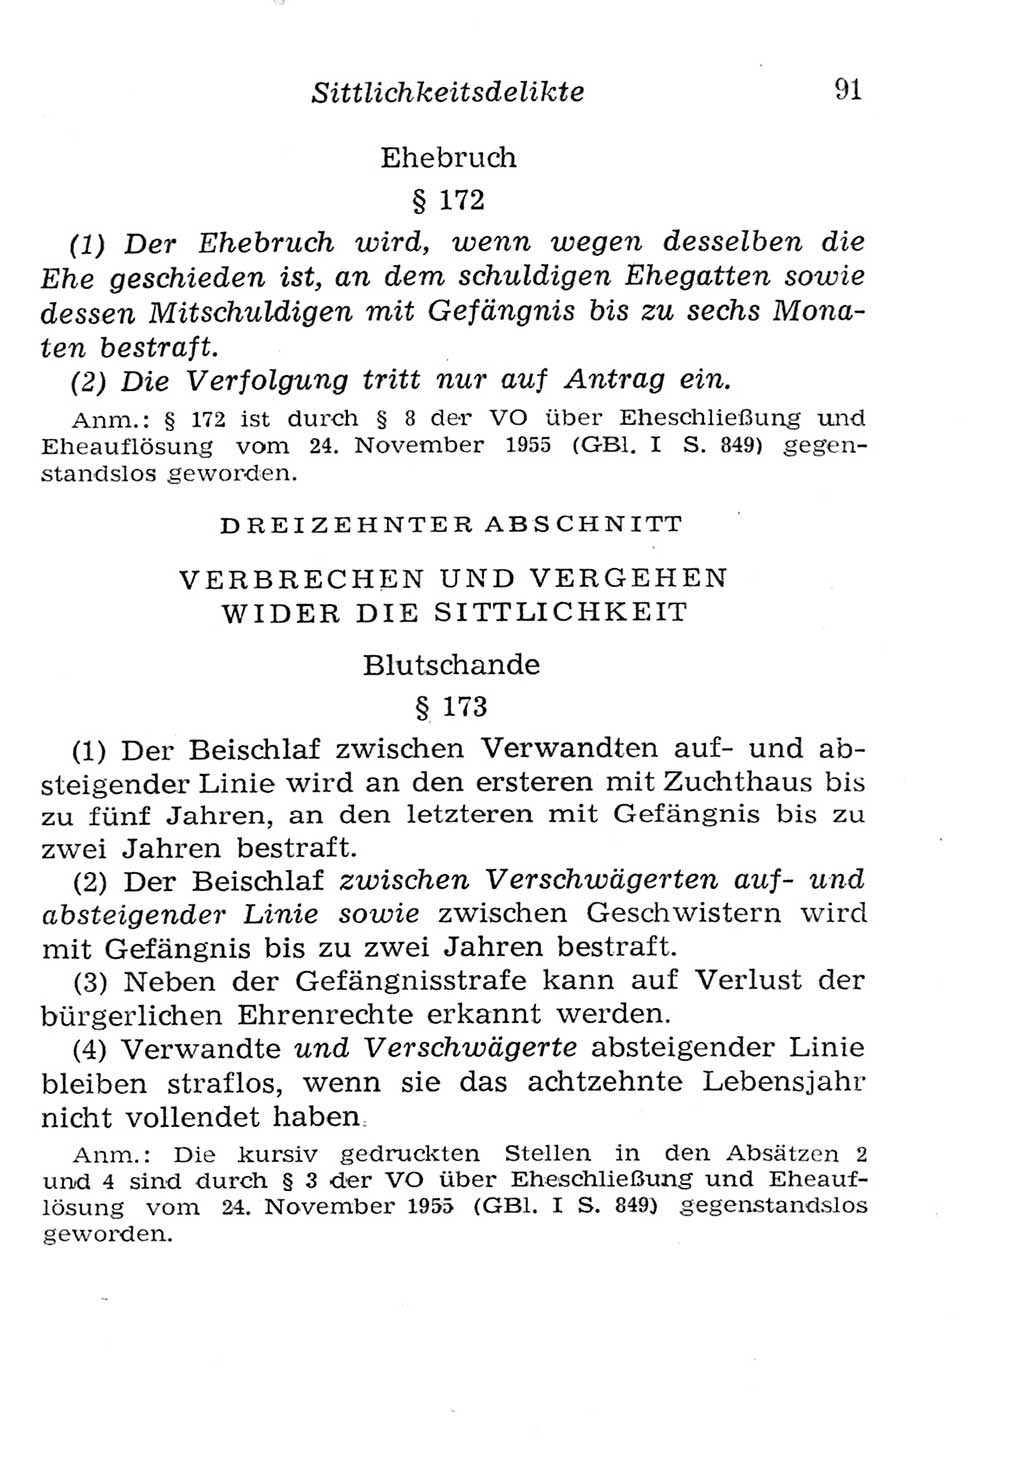 Strafgesetzbuch (StGB) und andere Strafgesetze [Deutsche Demokratische Republik (DDR)] 1957, Seite 91 (StGB Strafges. DDR 1957, S. 91)